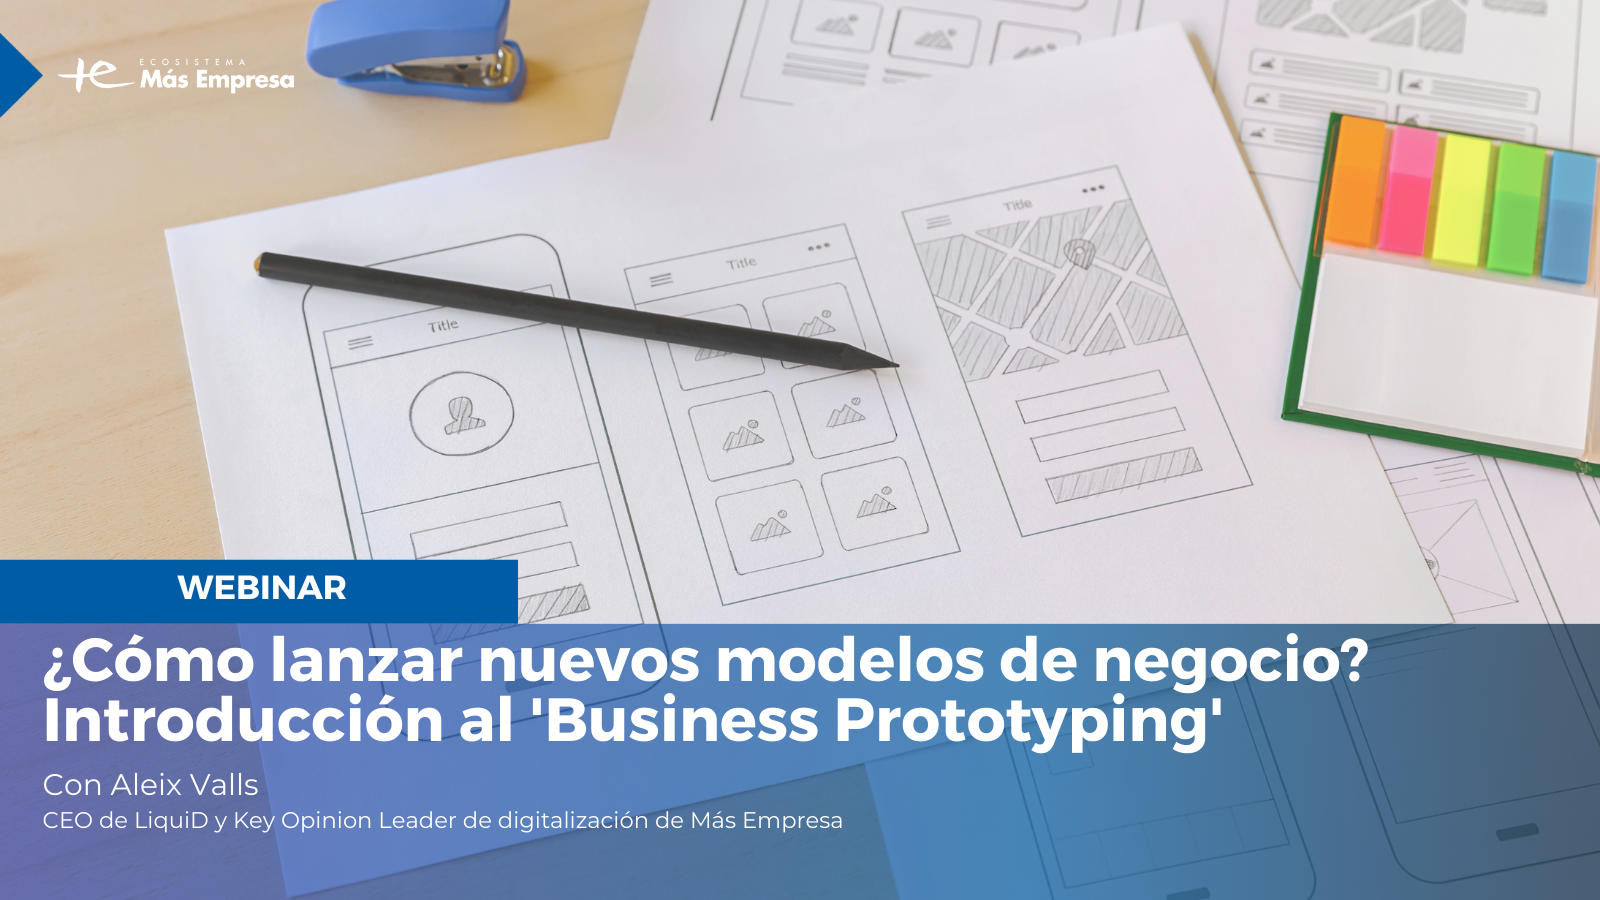 Lanza y valida nuevos modelos de negocio con \'Business Prototyping\'